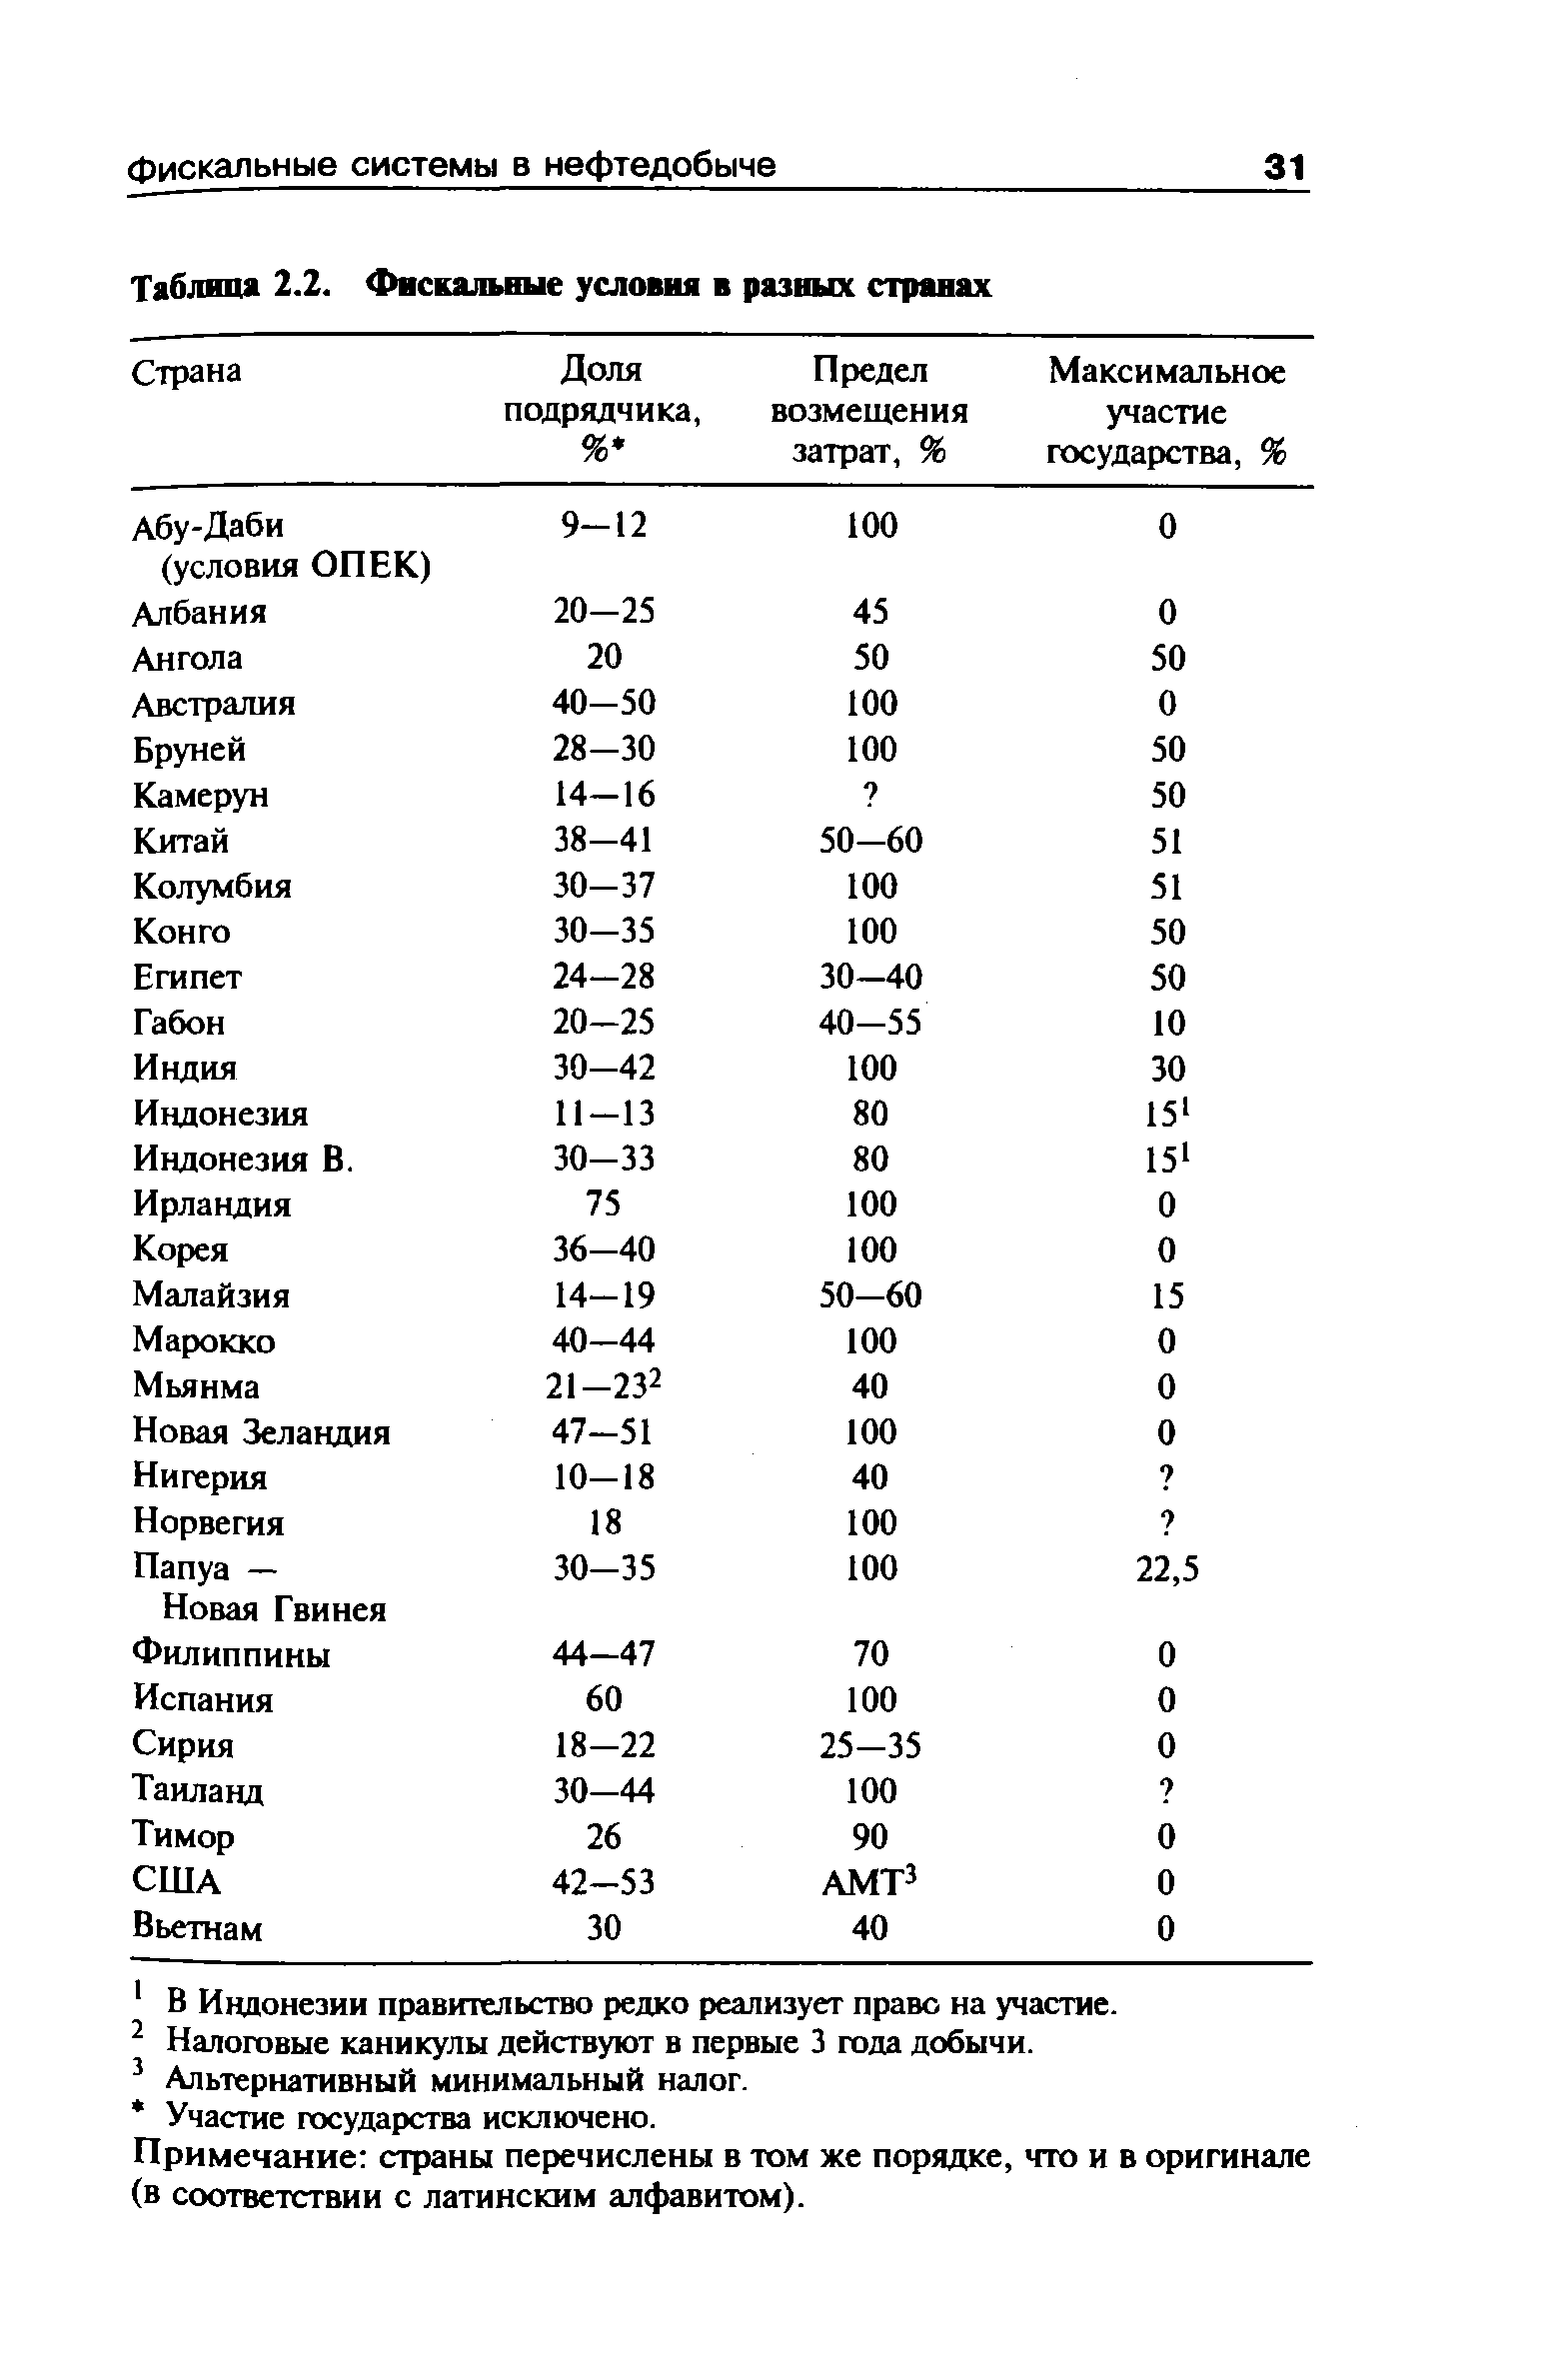 Таблица 2.2. Фискал ьные условия в разных странах 
